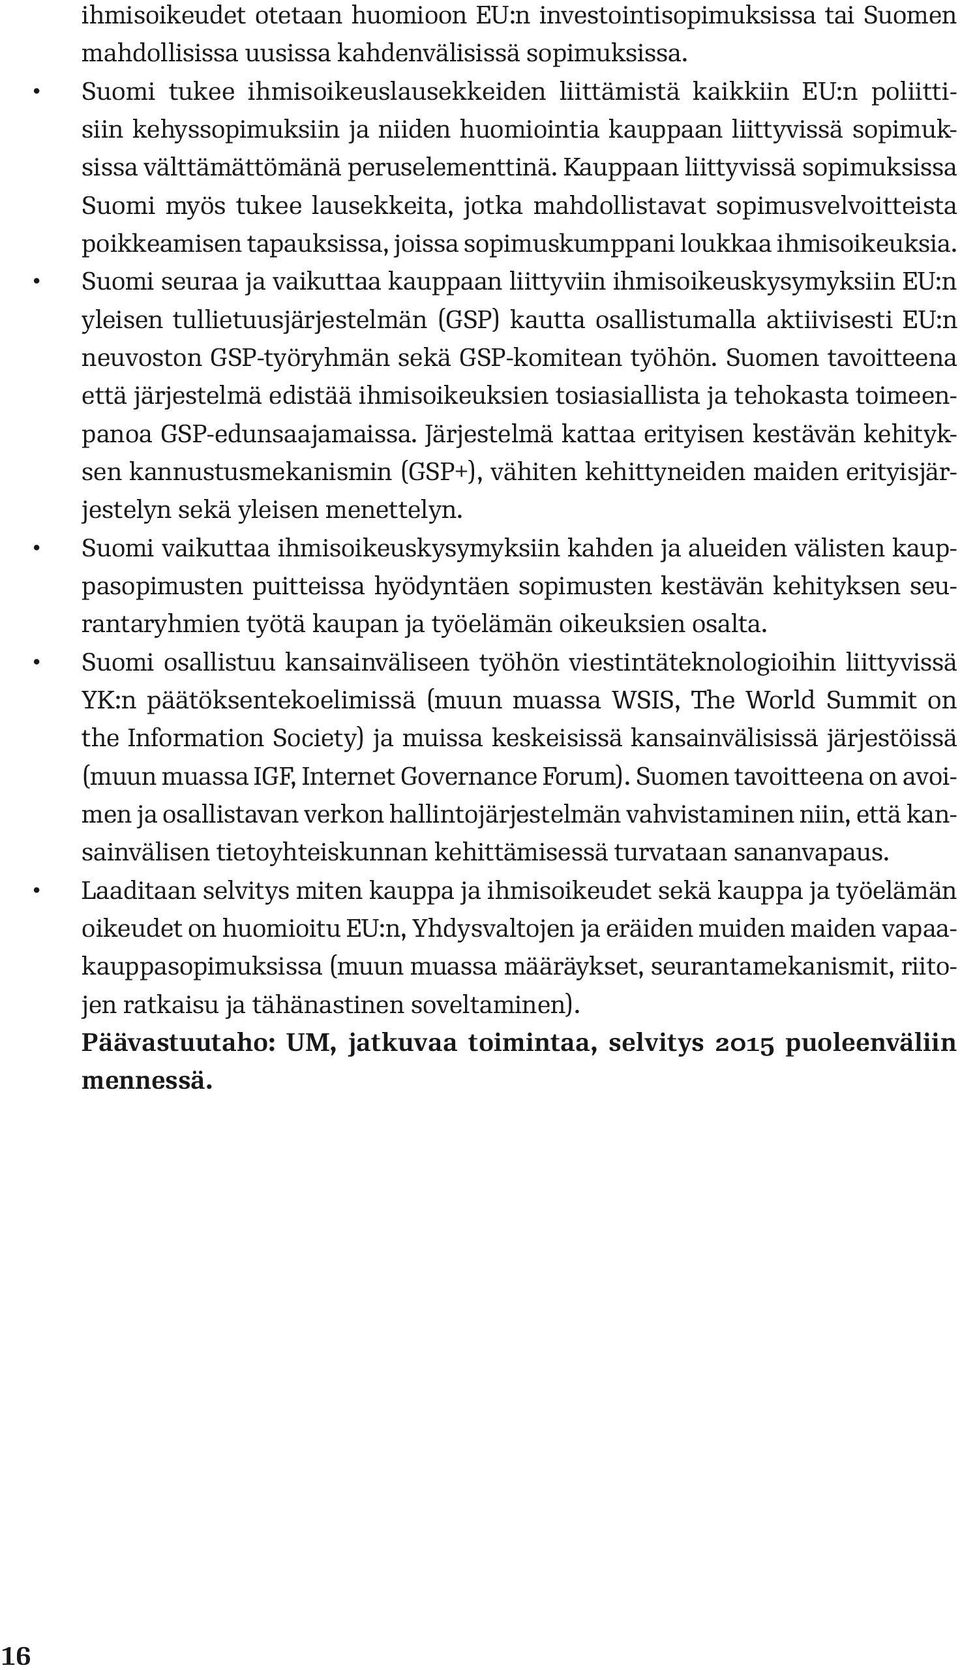 Kauppaan liittyvissä sopimuksissa Suomi myös tukee lausekkeita, jotka mahdollistavat sopimusvelvoitteista poikkeamisen tapauksissa, joissa sopimuskumppani loukkaa ihmisoikeuksia.